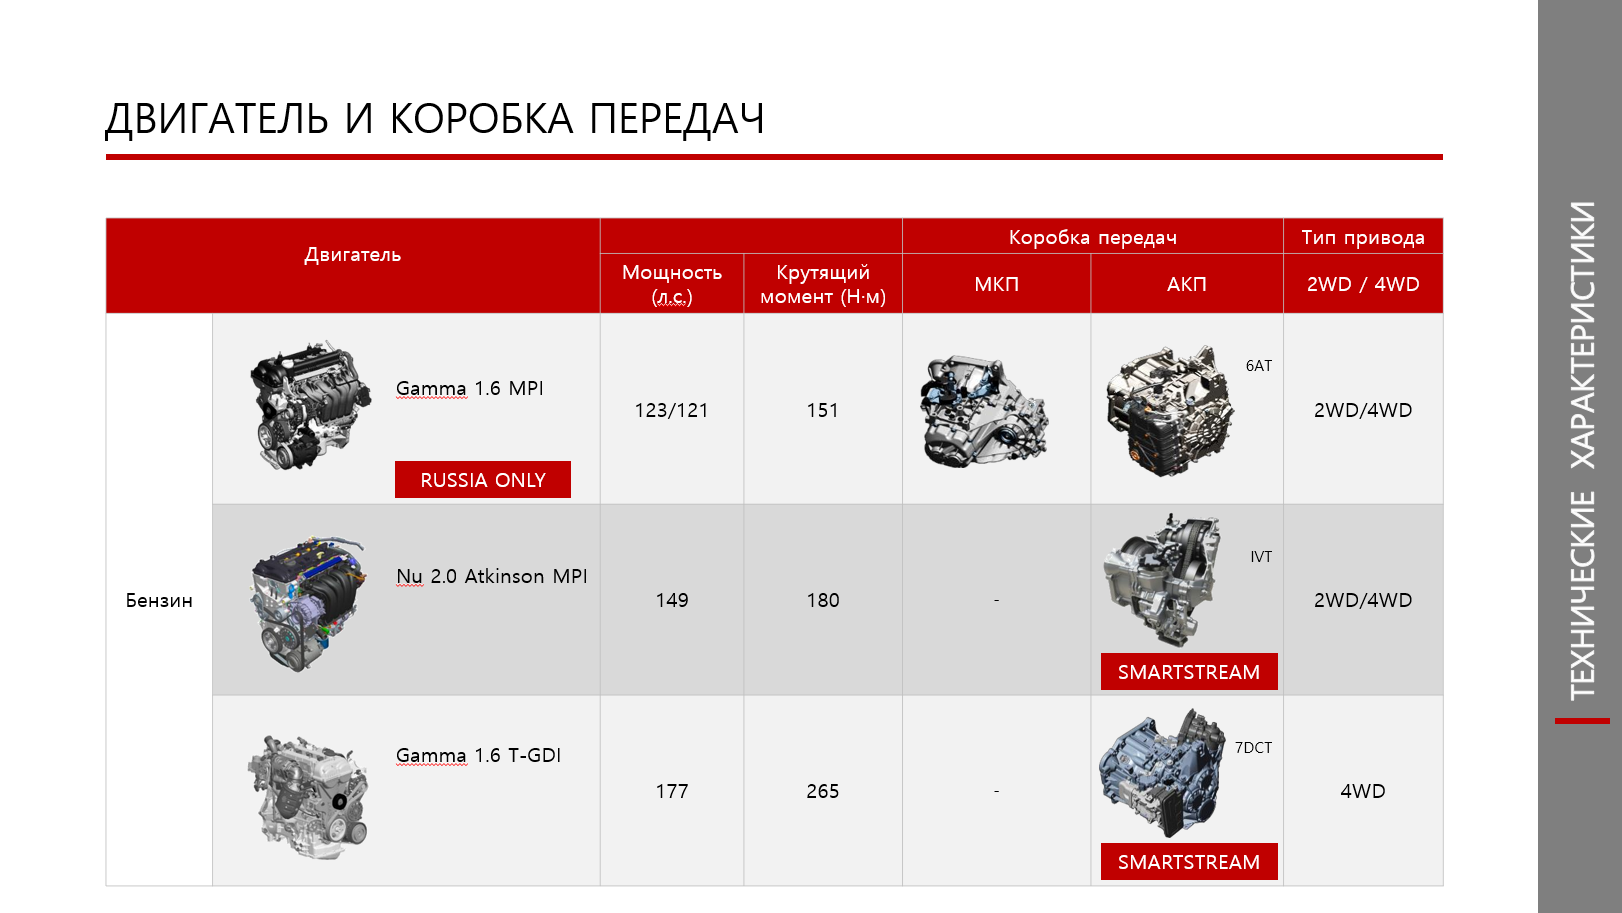 Киа селтос масло двигателя. ДВС Киа Селтос 2.0. Kia Seltos технические характеристики. Мотор 1.6 Kia Seltos характеристики. Характеристика Киа Селтос 1.6 автомат.